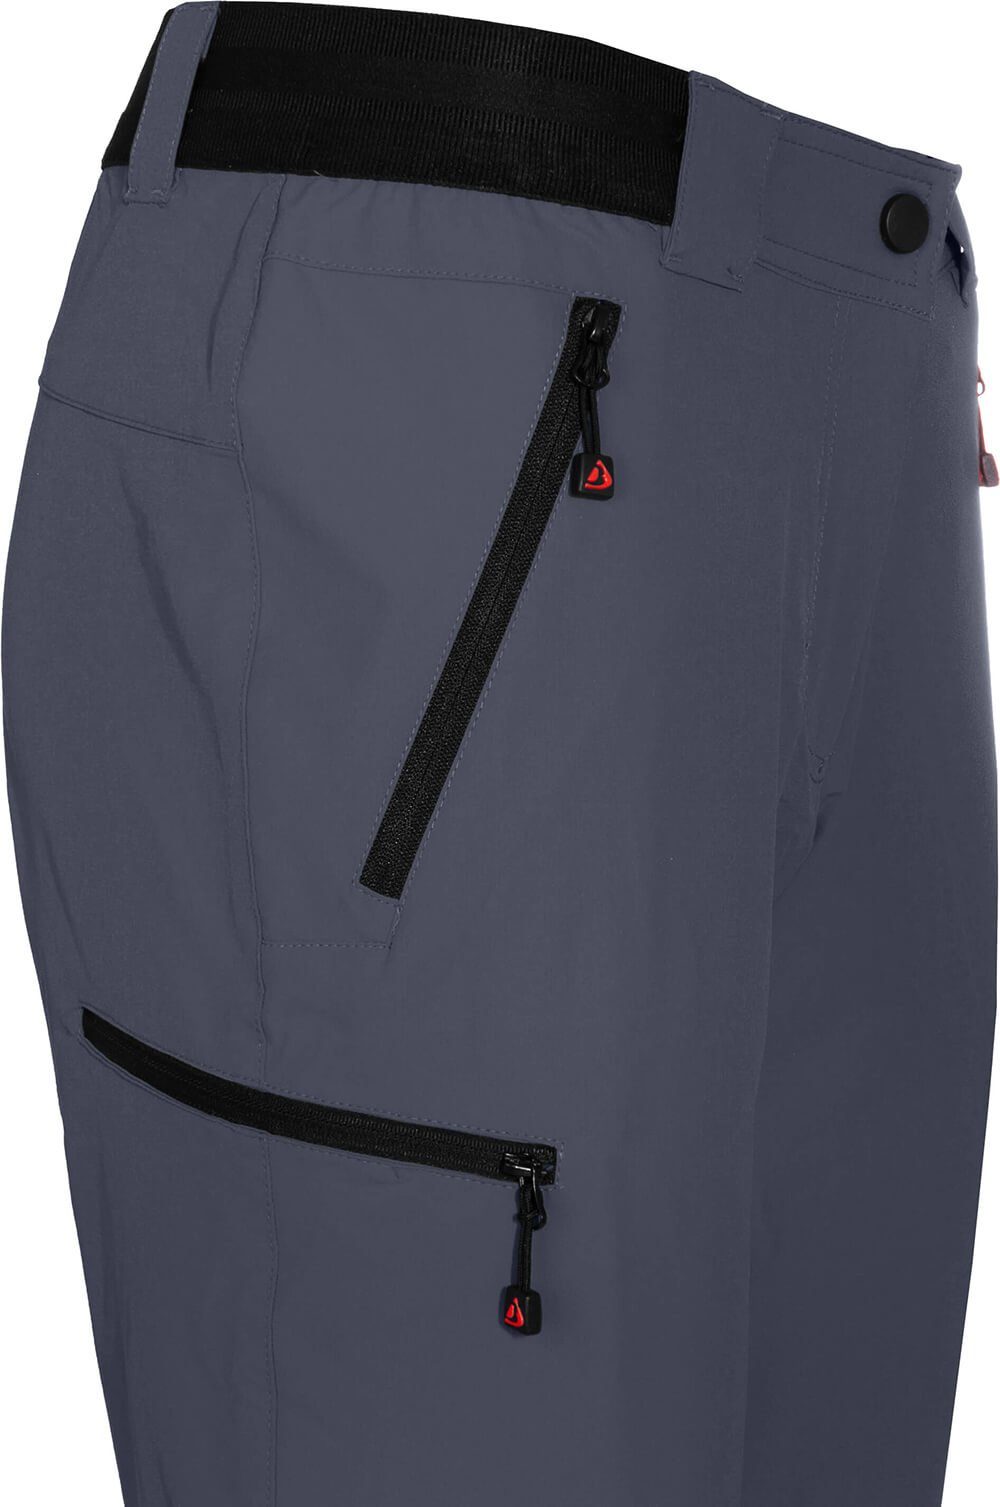 COMFORT grau/blau Kurzgrößen, Damen strapazierfähig, Bergson Zipp-Off Zip-off-Hose Wanderhose, leicht, VIDAA